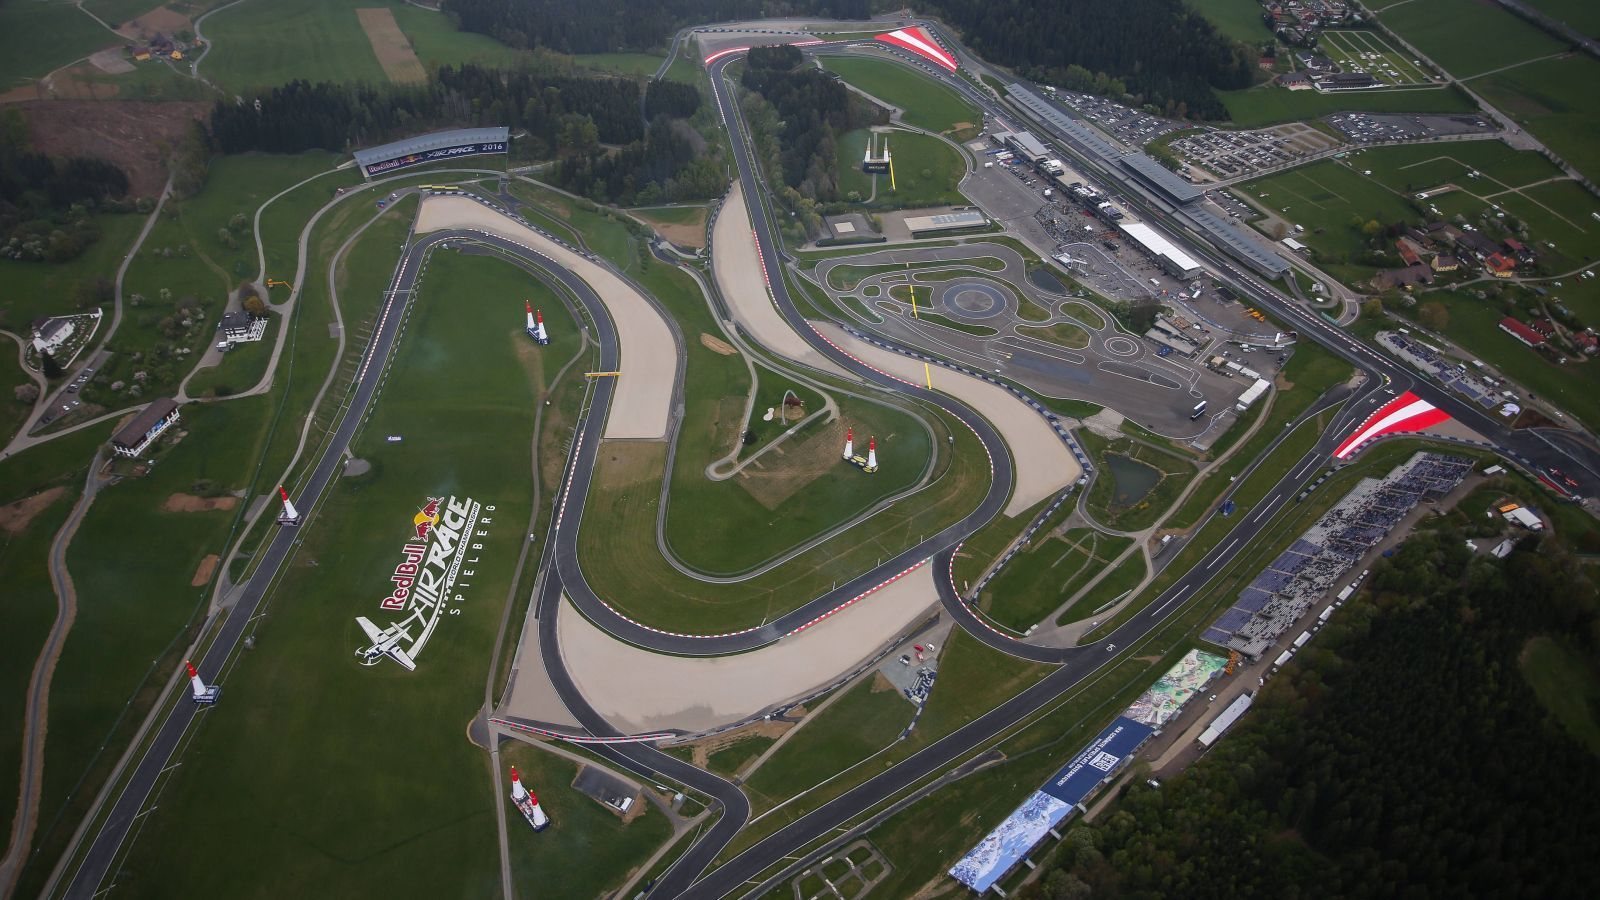 
                <strong>Red-Bull-Ring (03.09. bis 05.09.) - Die jüngste Strecke im Rennkalender</strong><br>
                Noch jünger als der Lausitzring ist der Red-Bull-Ring (4,326 km), gelegen in der Steiermark bei Spielberg. Dessen Bau wurde 2008 auf dem Gelände des ehemaligen Österreich- und A1-Rings in Angriff genommen. Der einstige Formel-1-Kurs der Alpenrepublik, auf dem zwischen 2001 und 2003 auch die DTM zu Gast war, lag seit 2003 brach und war in den Folgejahren samt Tribünen sukzessive abgerissen worden. 2011 schließlich konnte der Rennbetrieb wieder aufgenommen werden, und auch die DTM kehrte in jenem Jahr bereits nach Spielberg zurück.
              